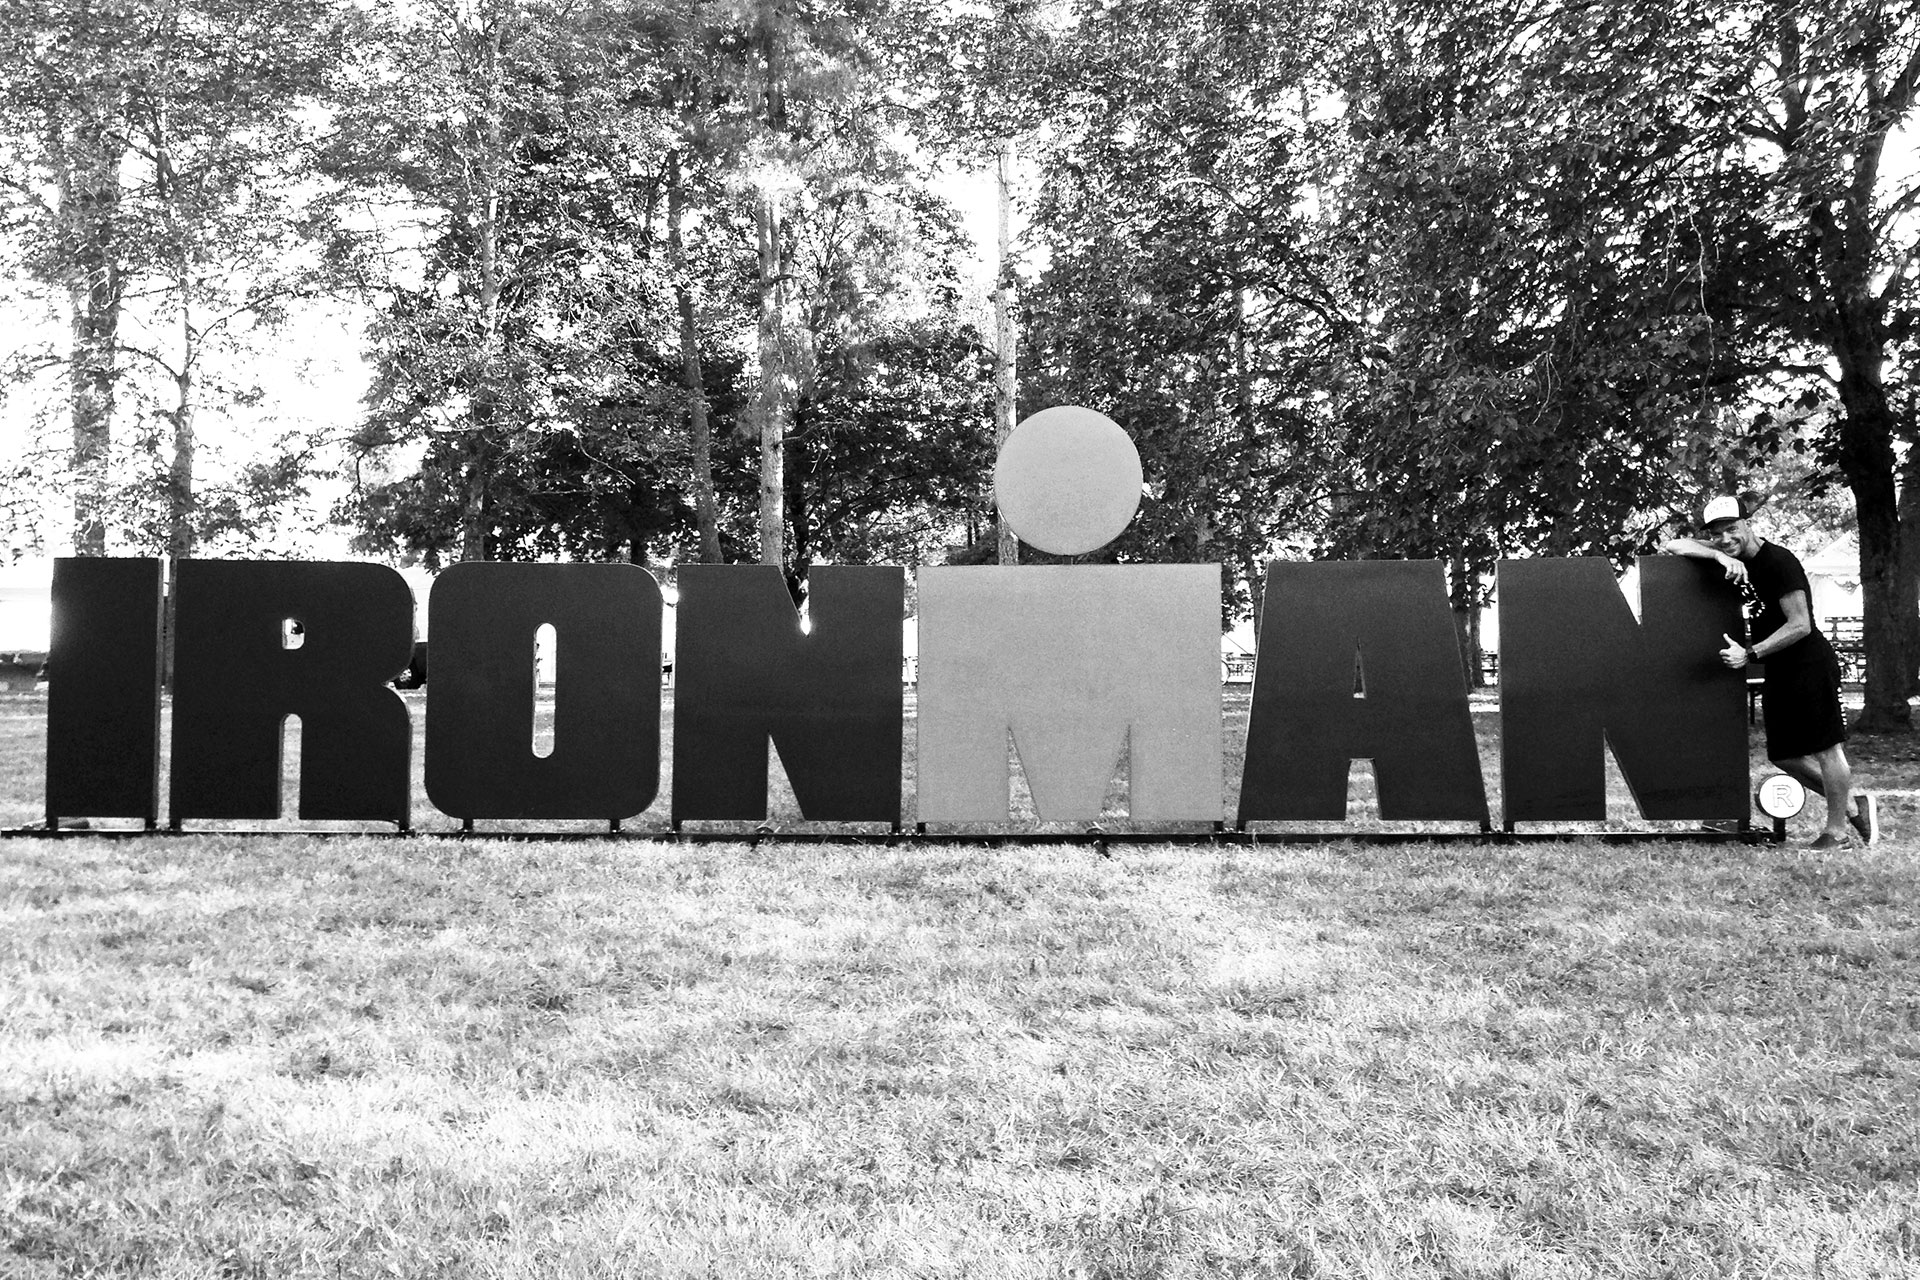 IRONMAN VICHY 2016 The Story: Echter Erfolg mit virtuellen Nebenwirkungen / Das Ironman Branding an allen Orten der Stadt ©stefandrexl.de